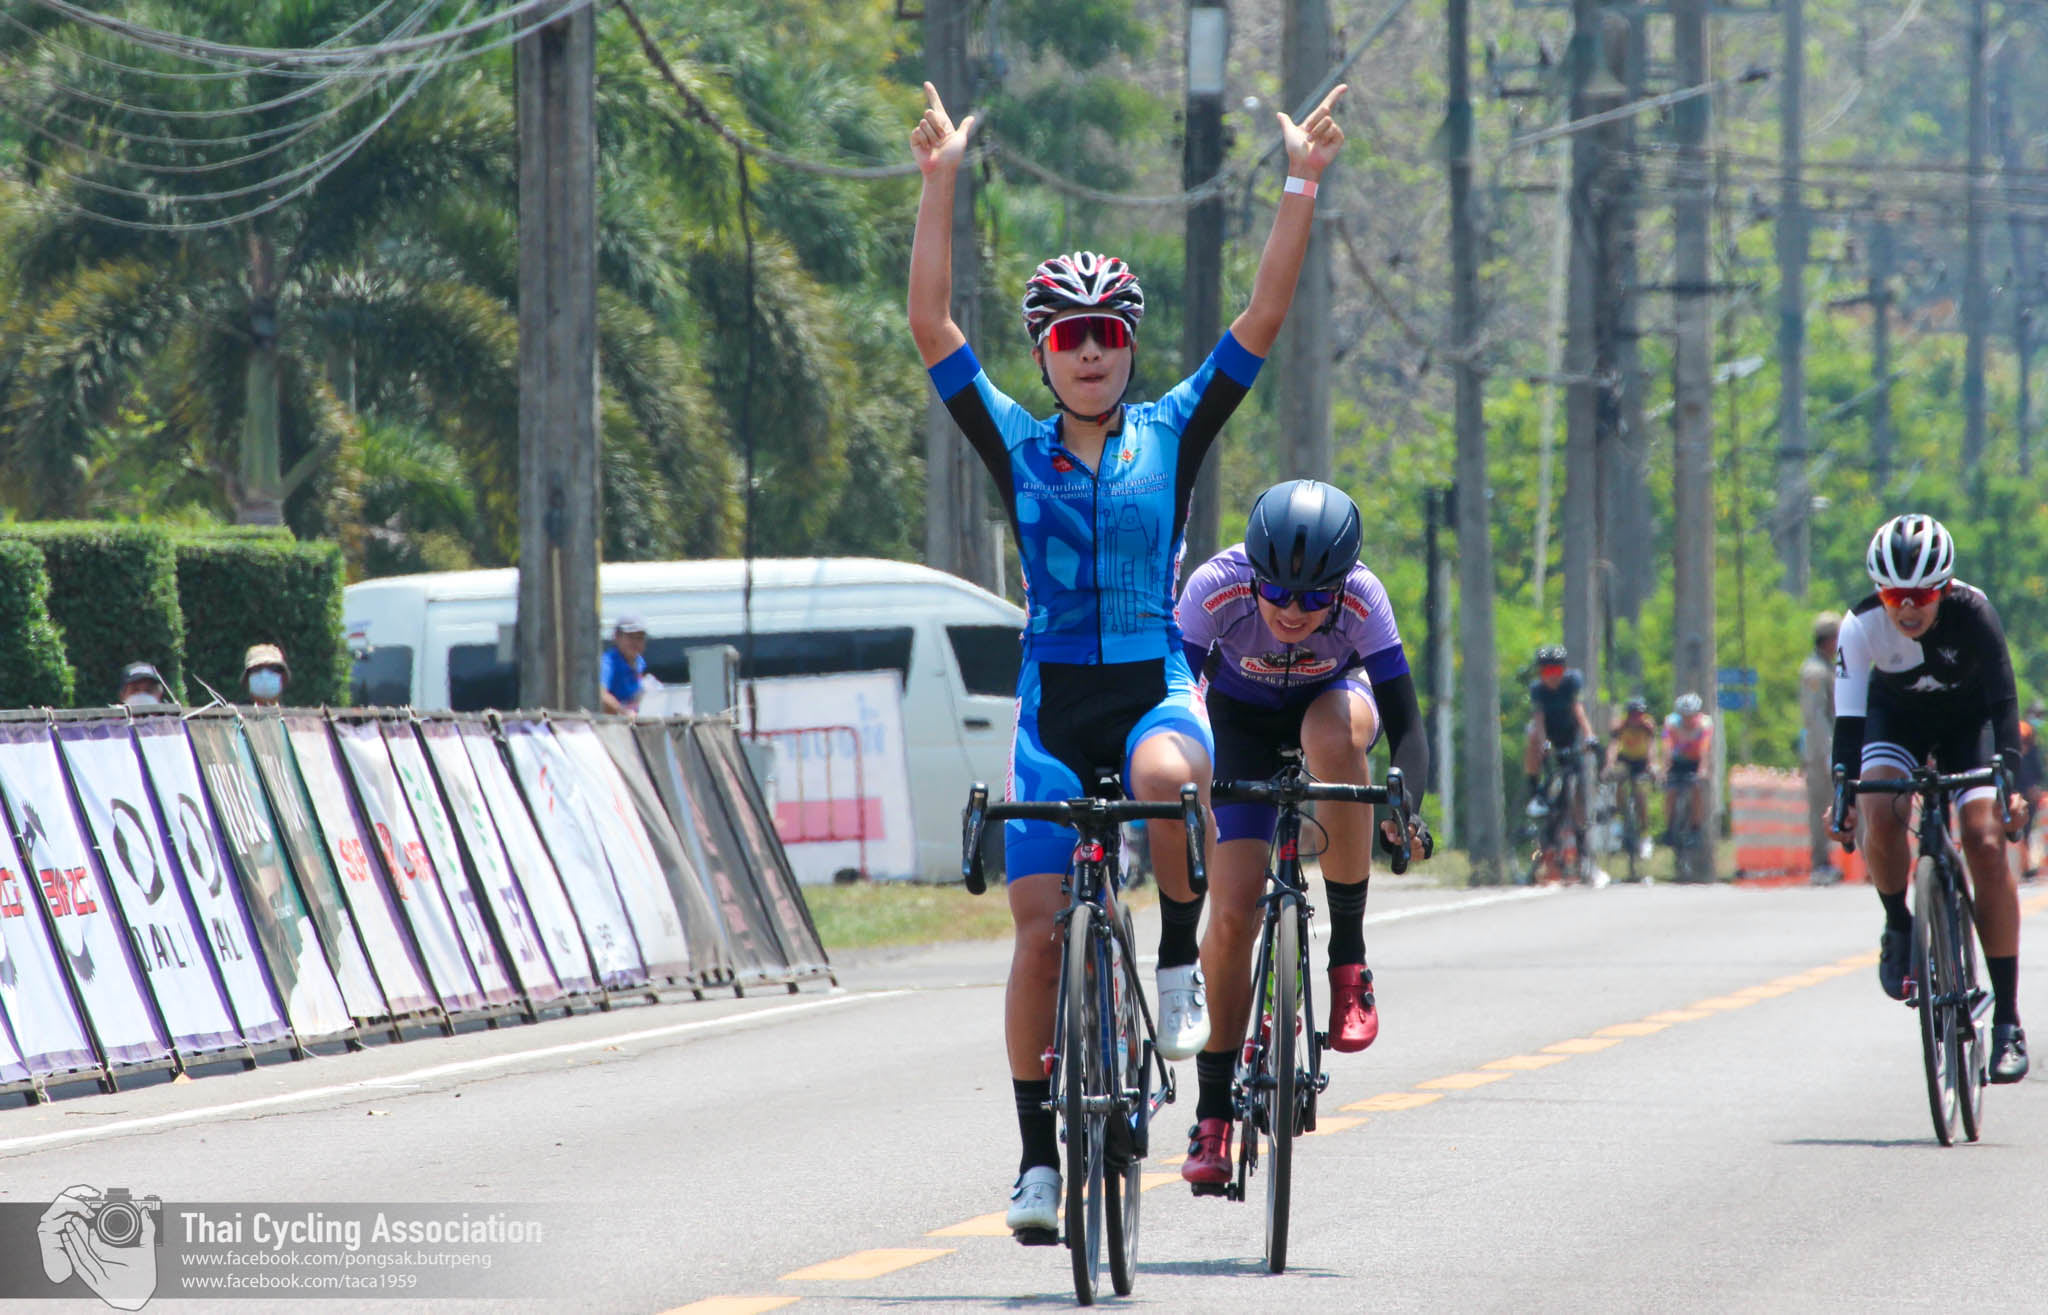 การแข่งขันจักรยานประเภทถนน ชิงแชมป์ประเทศไทย ชิงถ้วยพระราชทานฯ และการแข่งขันจักรยานเมาเท่นไบค์ ชิงแชมป์ประเทศไทย ชิงถ้วยพระราชทาน ฯ สนามที่ 4